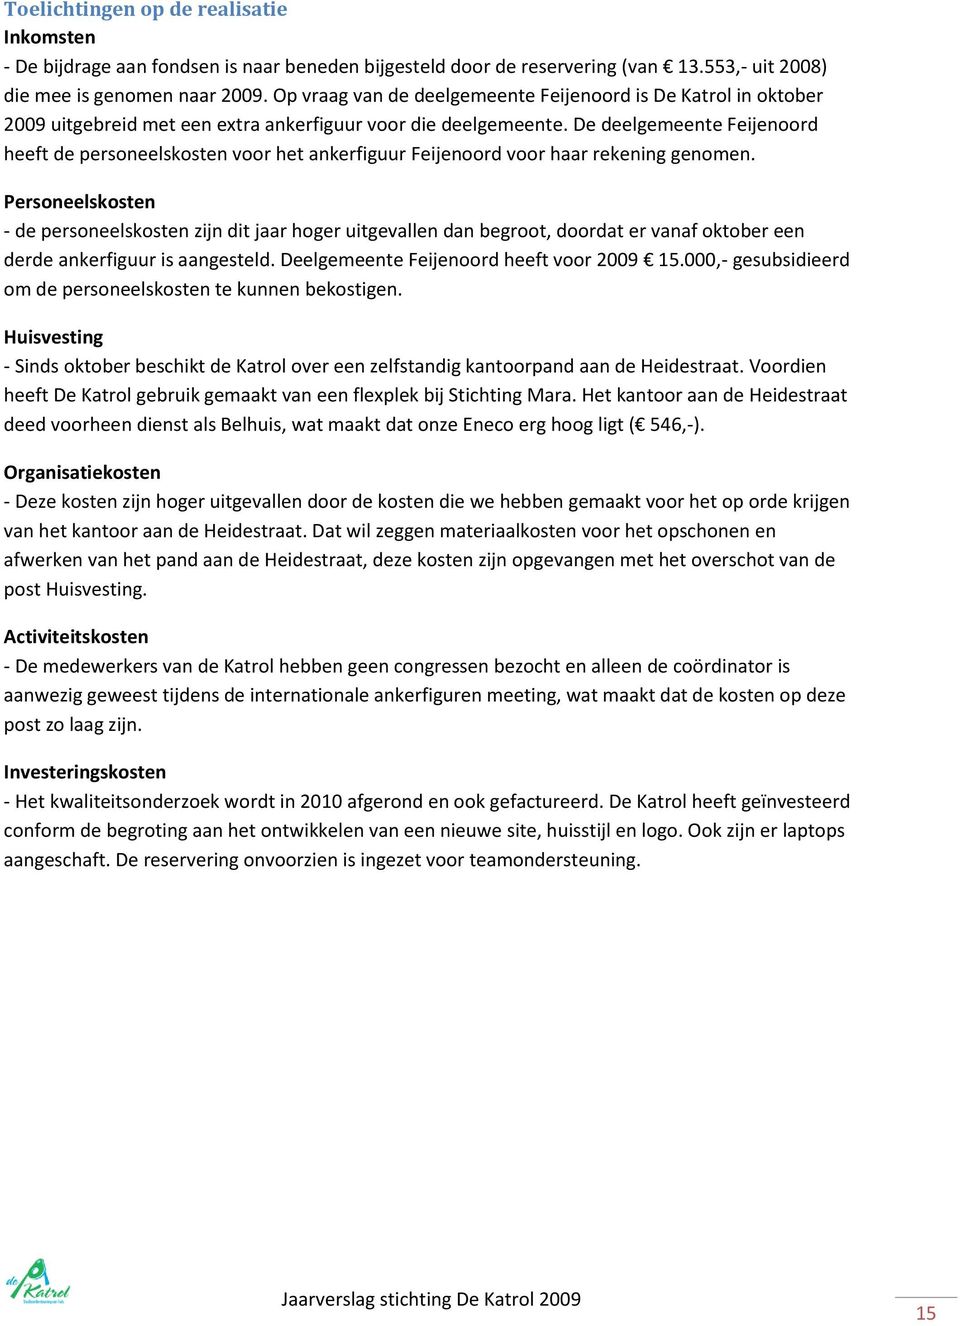 De deelgemeente Feijenoord heeft de personeelskosten voor het ankerfiguur Feijenoord voor haar rekening genomen.